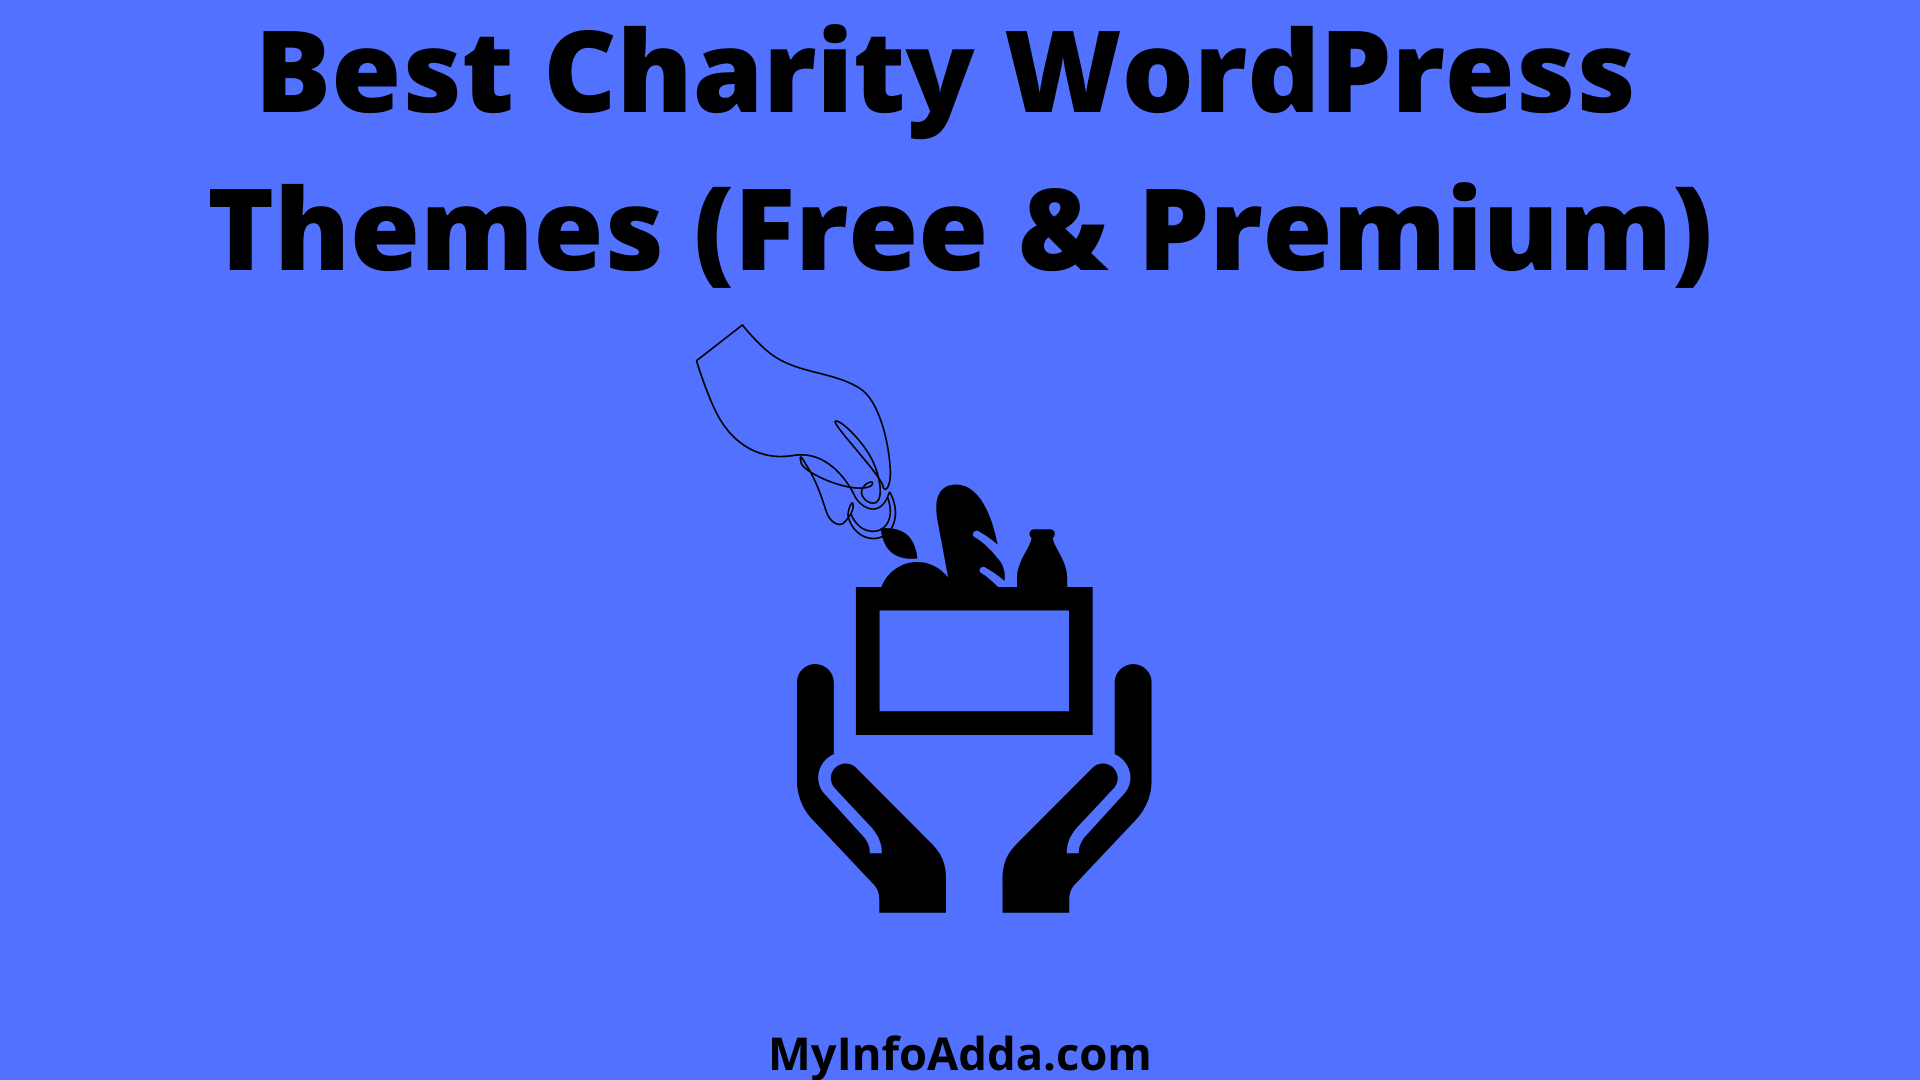 Best Charity WordPress Themes (Free & Premium)